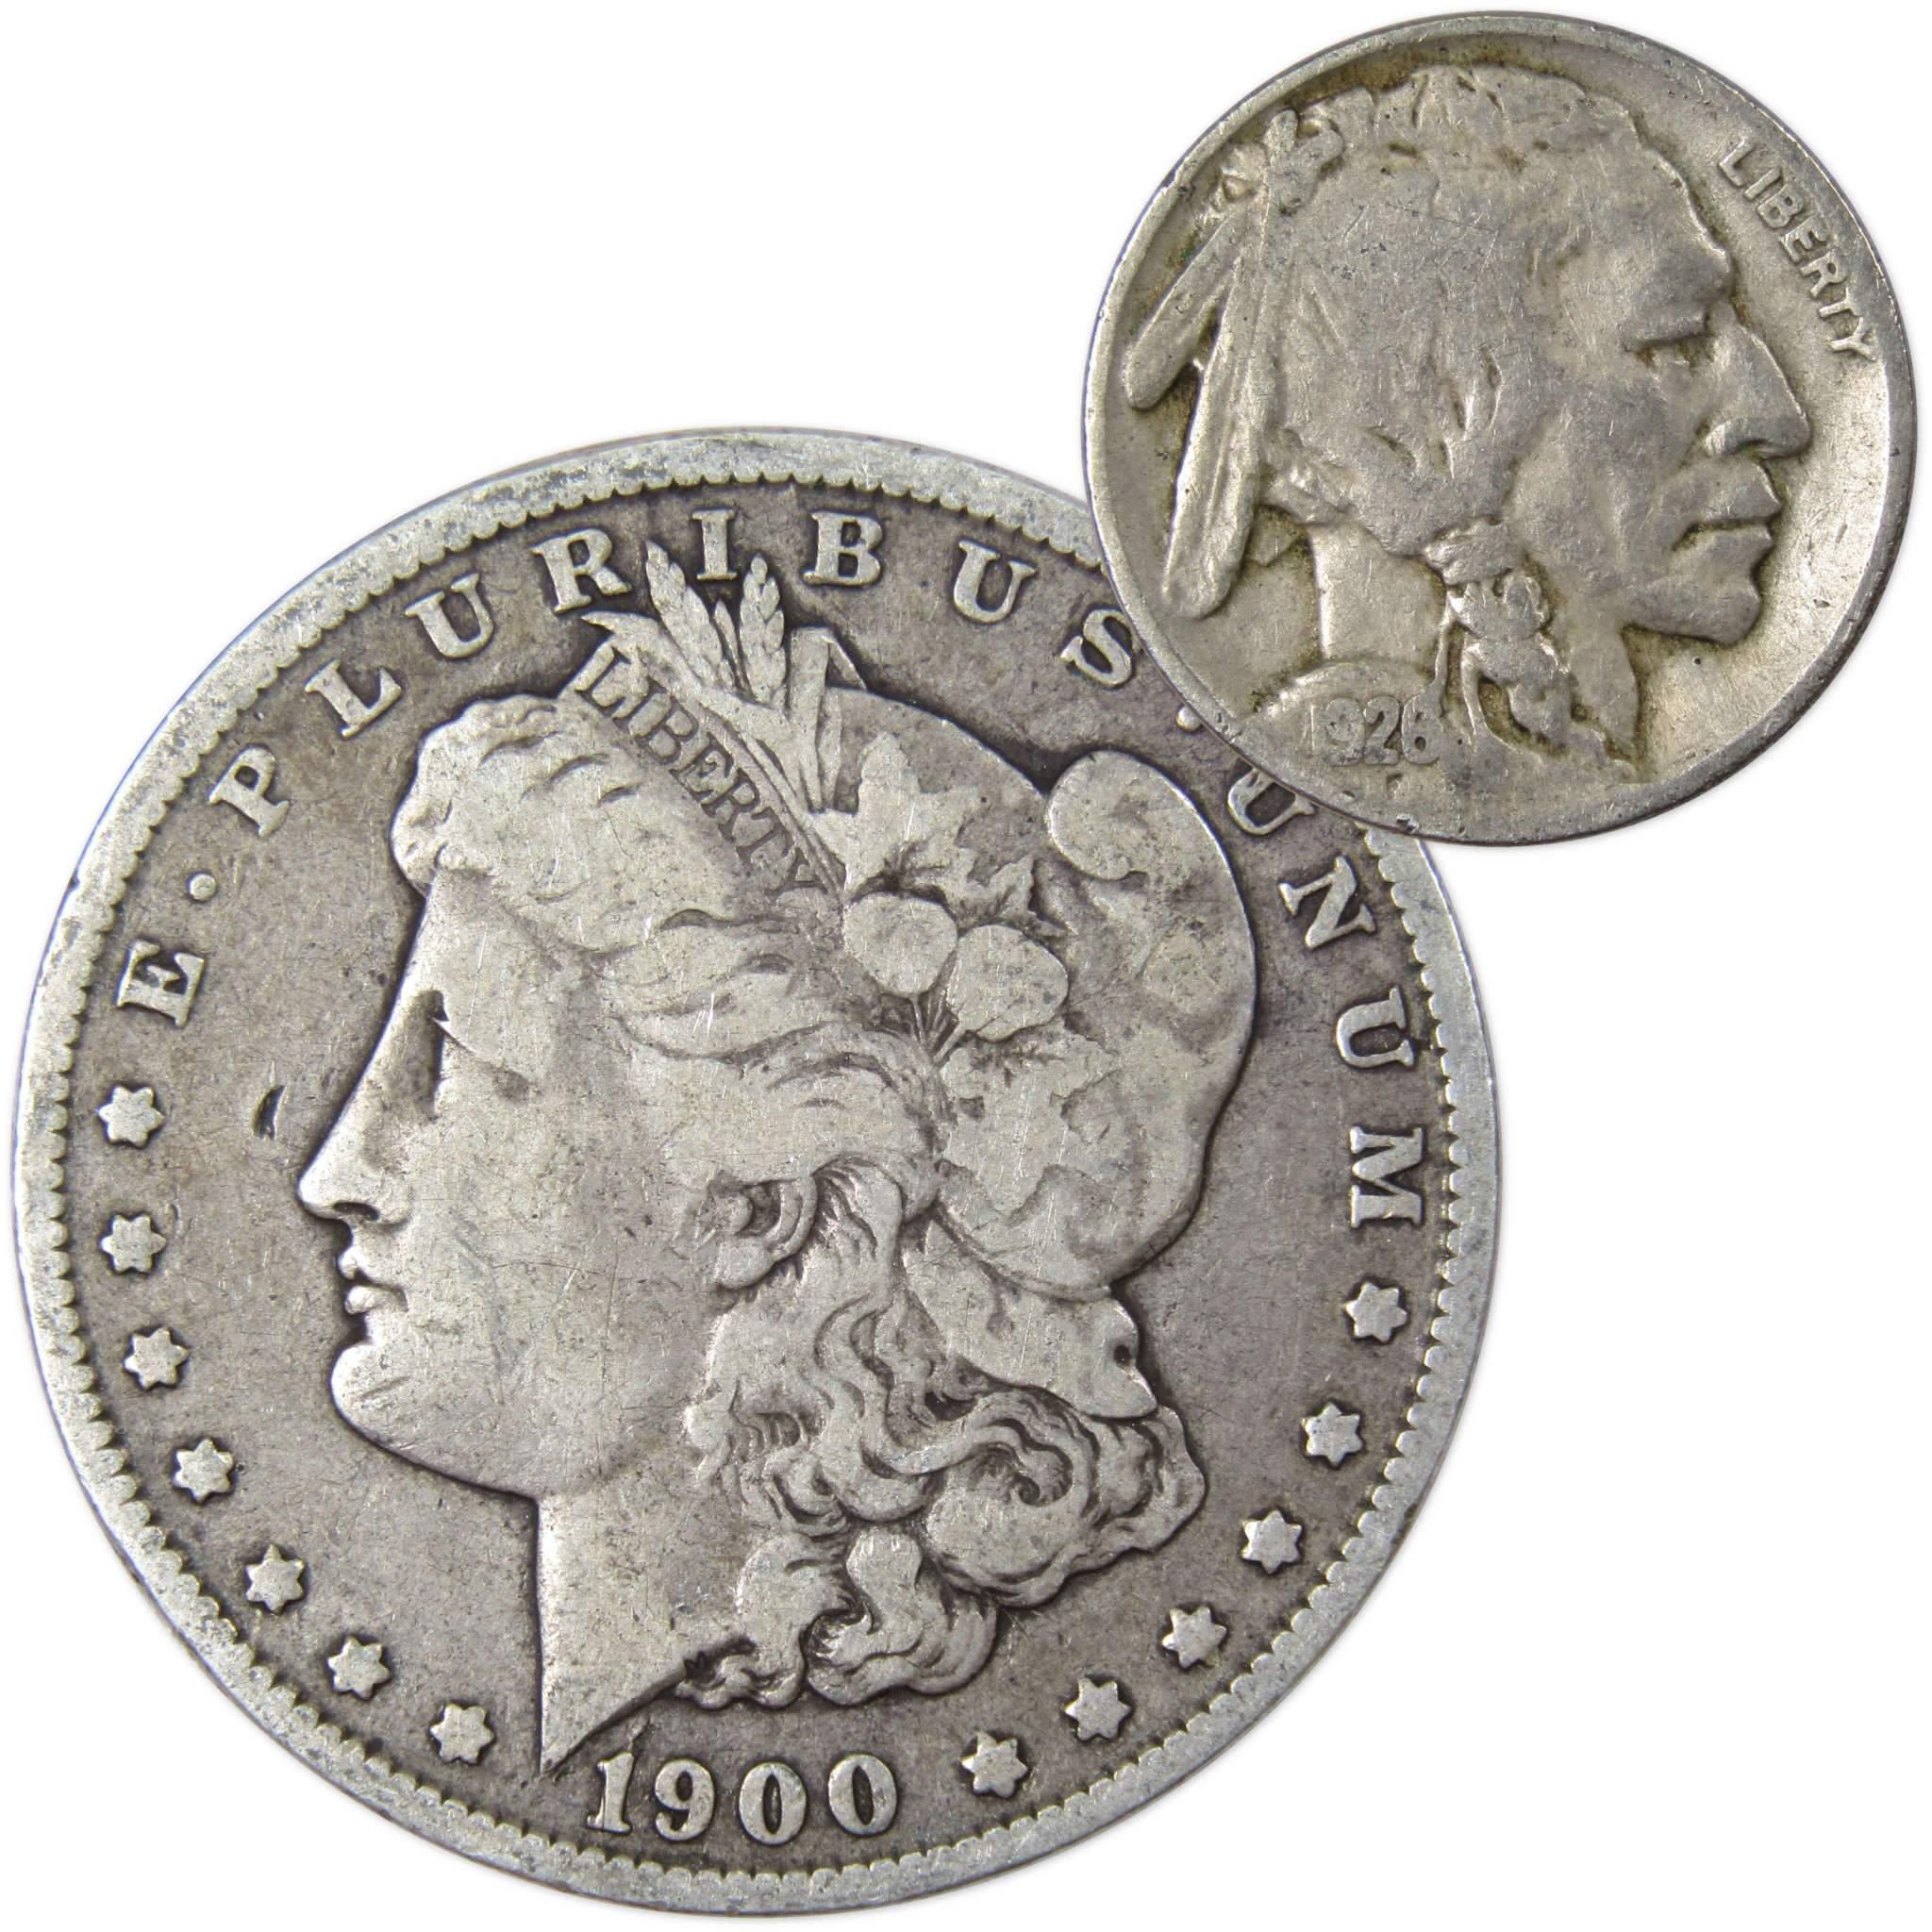 1900 O Morgan Dollar VG Very Good 90% Silver with 1926 Buffalo Nickel F Fine - Morgan coin - Morgan silver dollar - Morgan silver dollar for sale - Profile Coins &amp; Collectibles